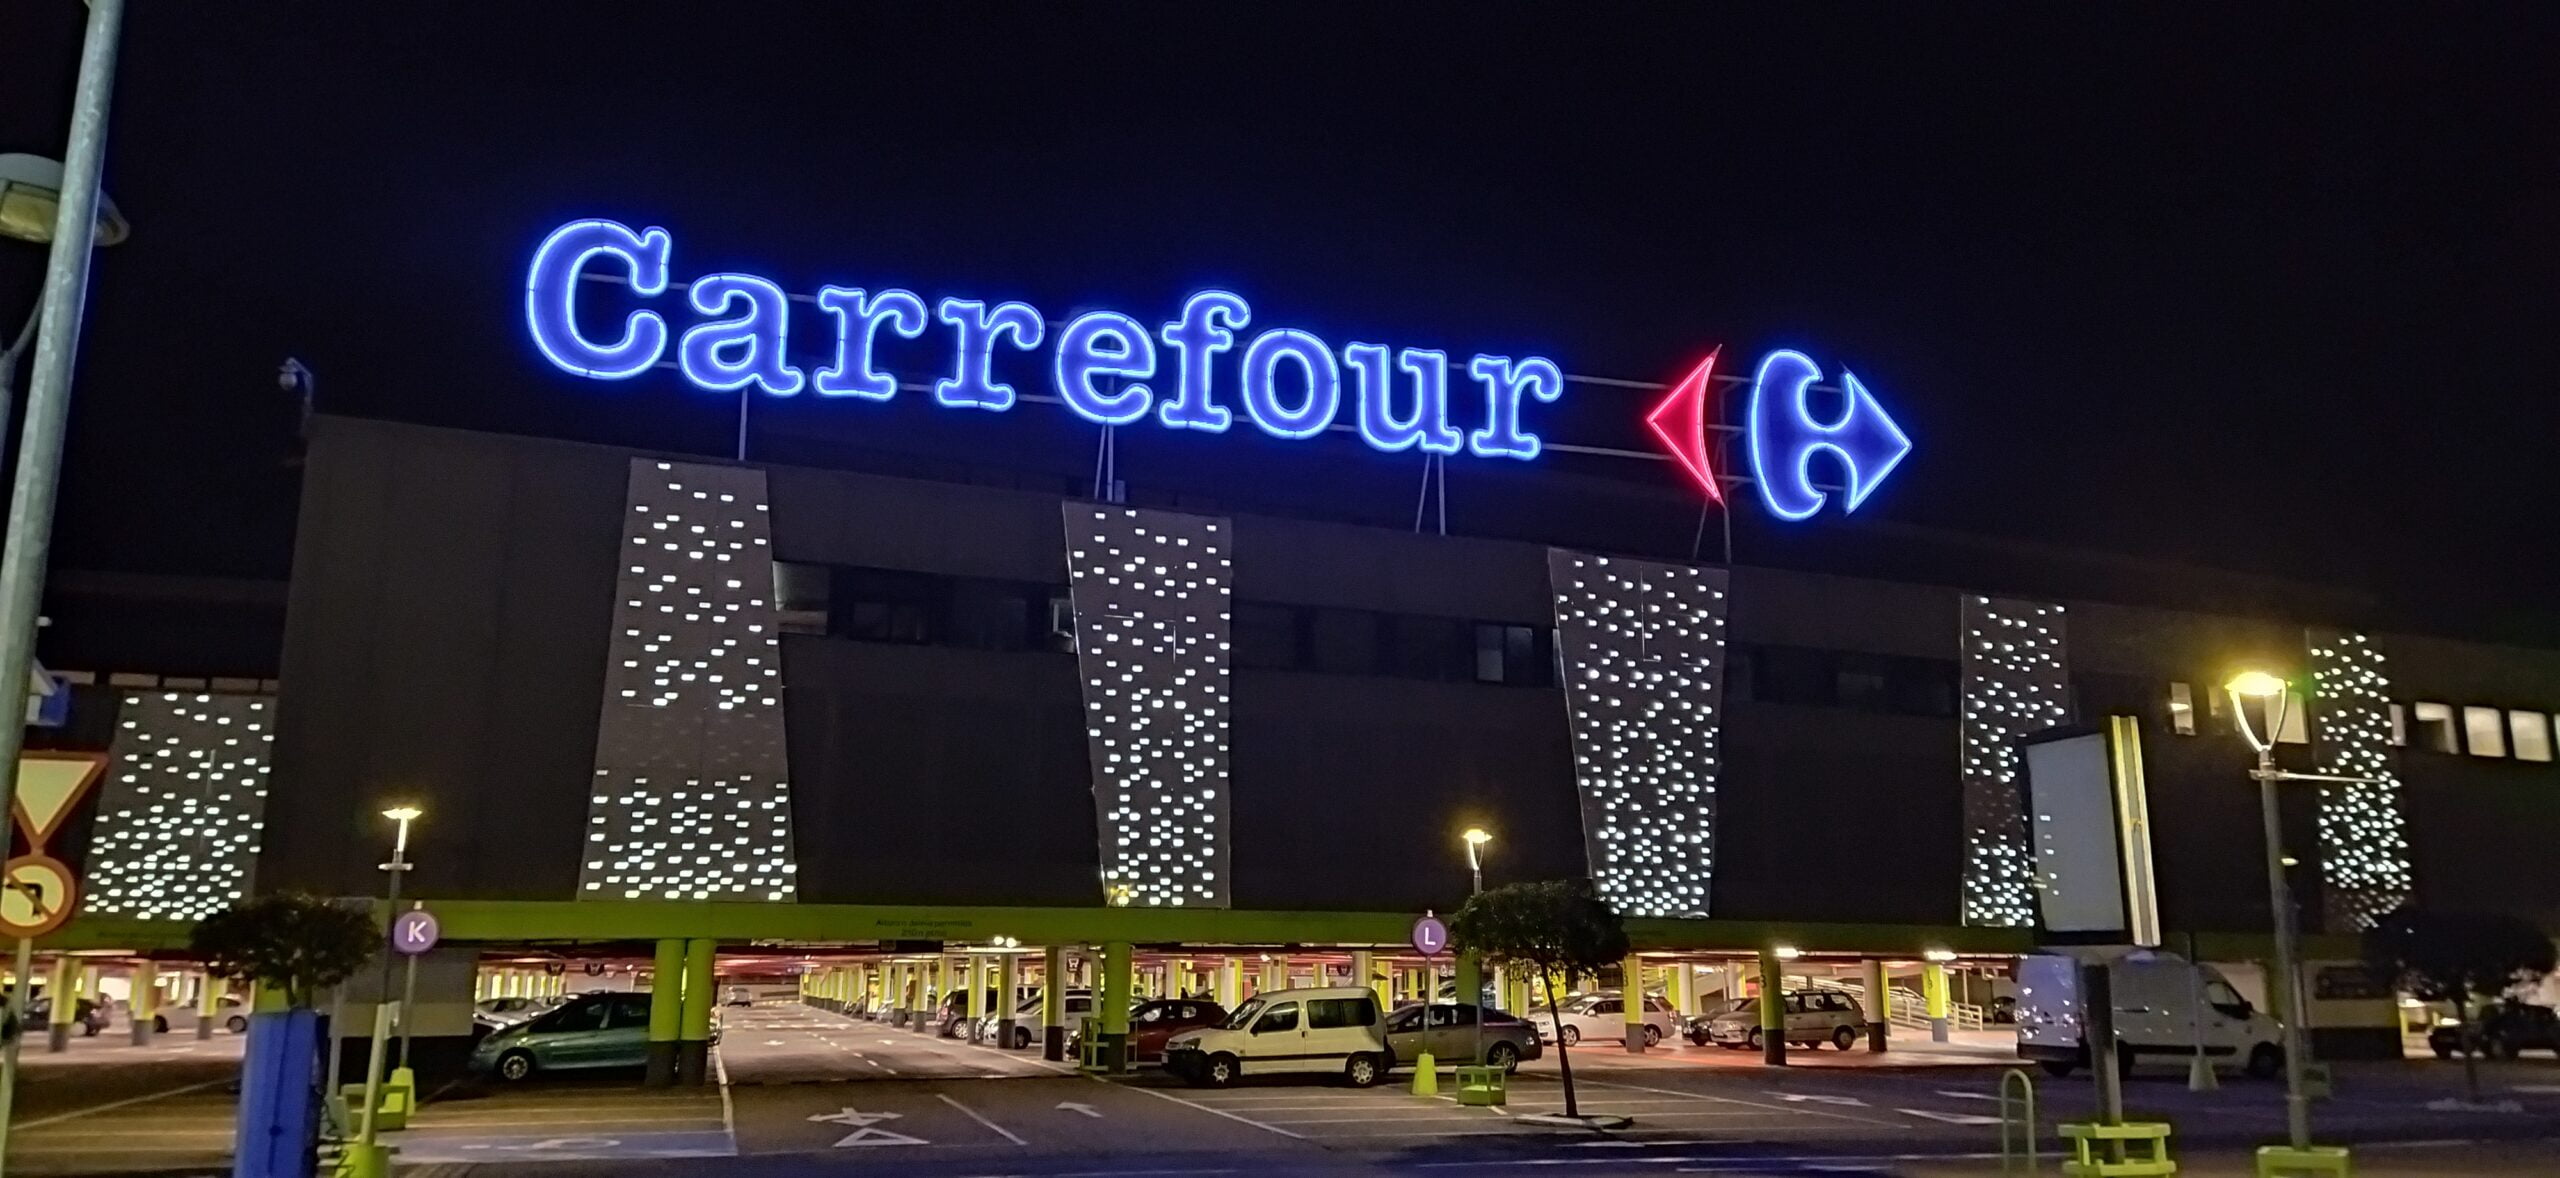 Parking przed budynkiem supermarketu Carrefour wieczorem, z naświetlonymi literami i strzałką logo na elewacji.